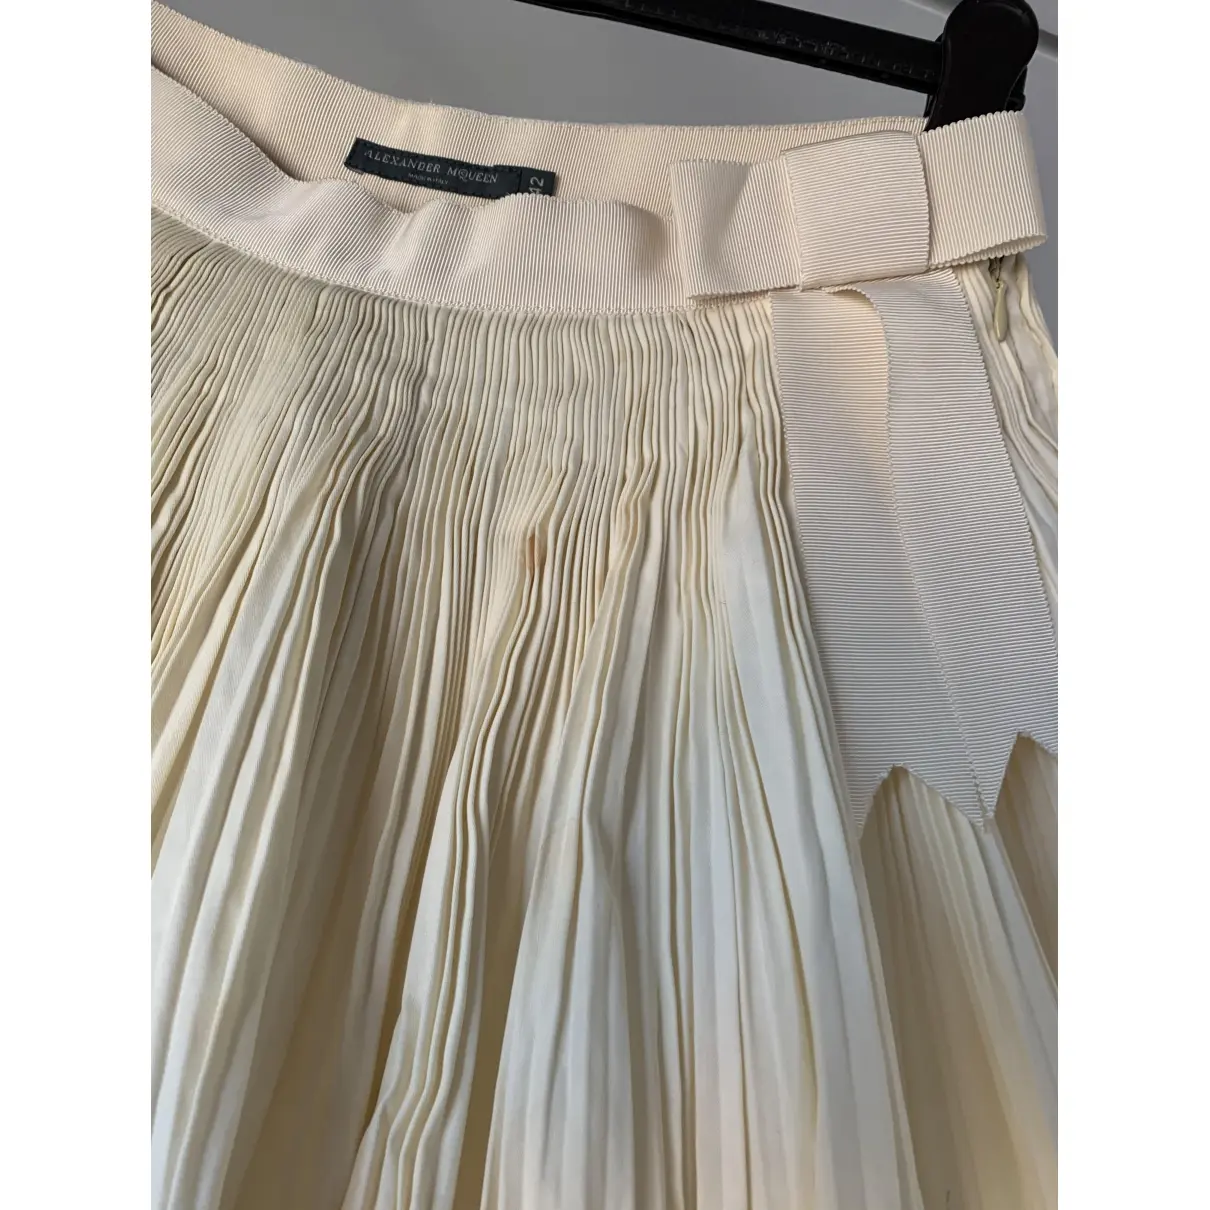 Buy Alexander McQueen Mid-length skirt online